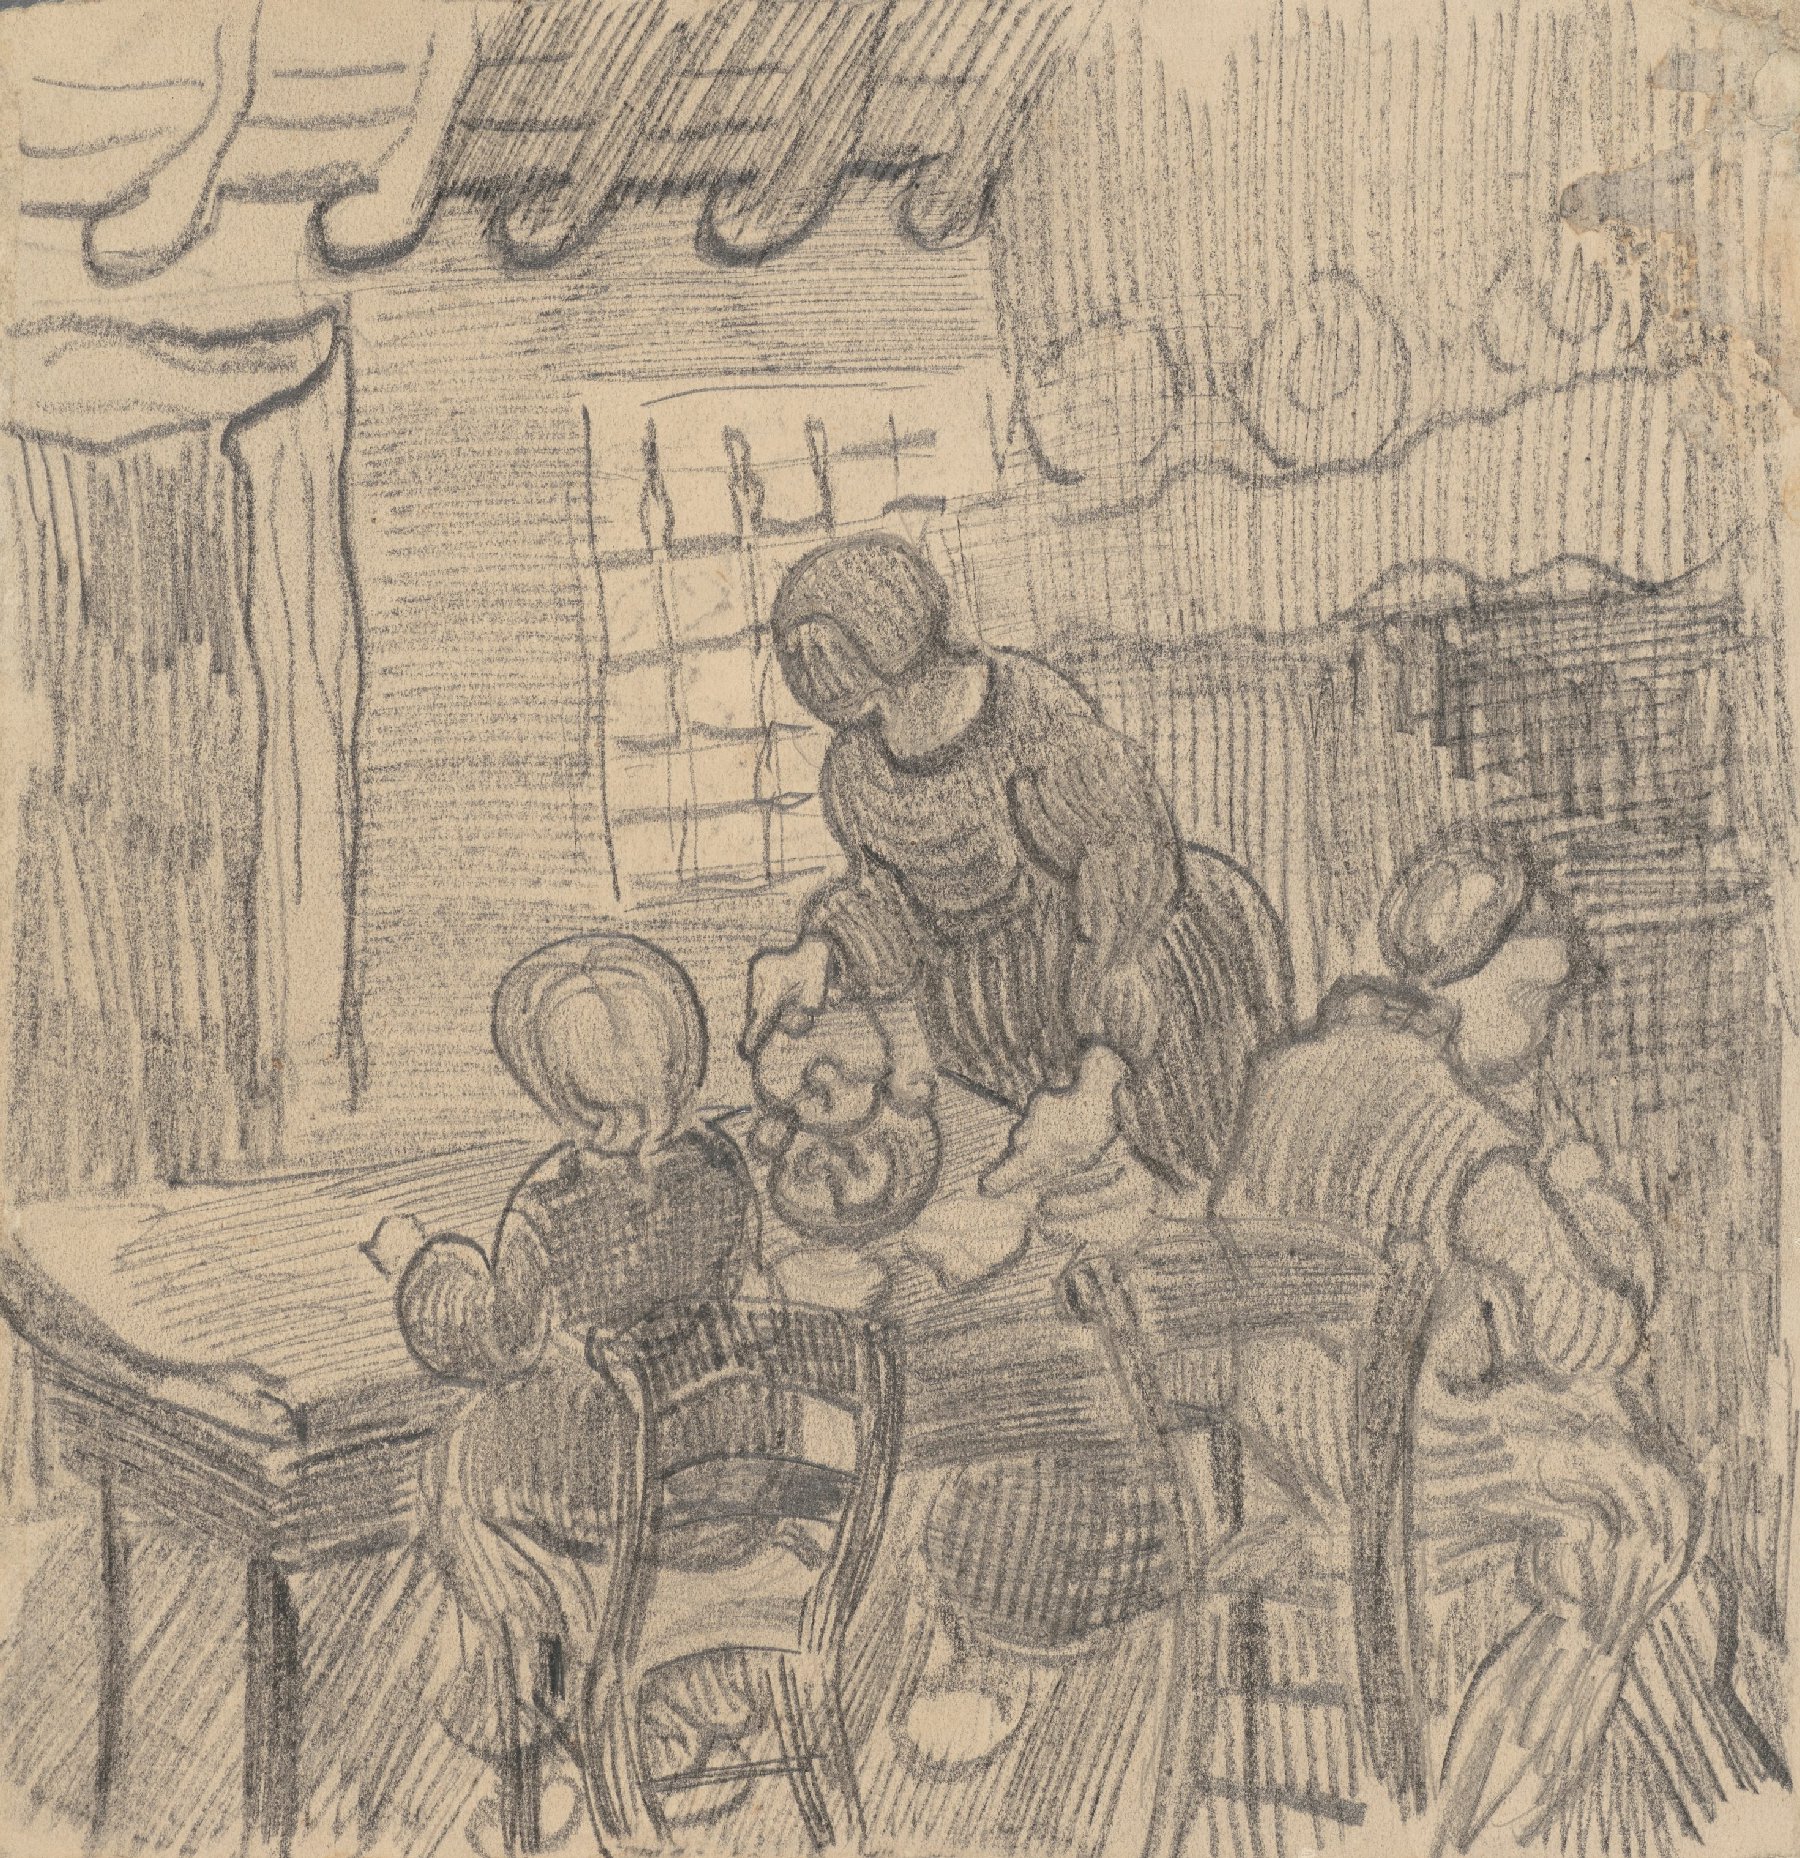 Interieur met drie figuren bij een tafel Vincent van Gogh (1853 - 1890), Saint-Rémy-de-Provence, maart-april 1890